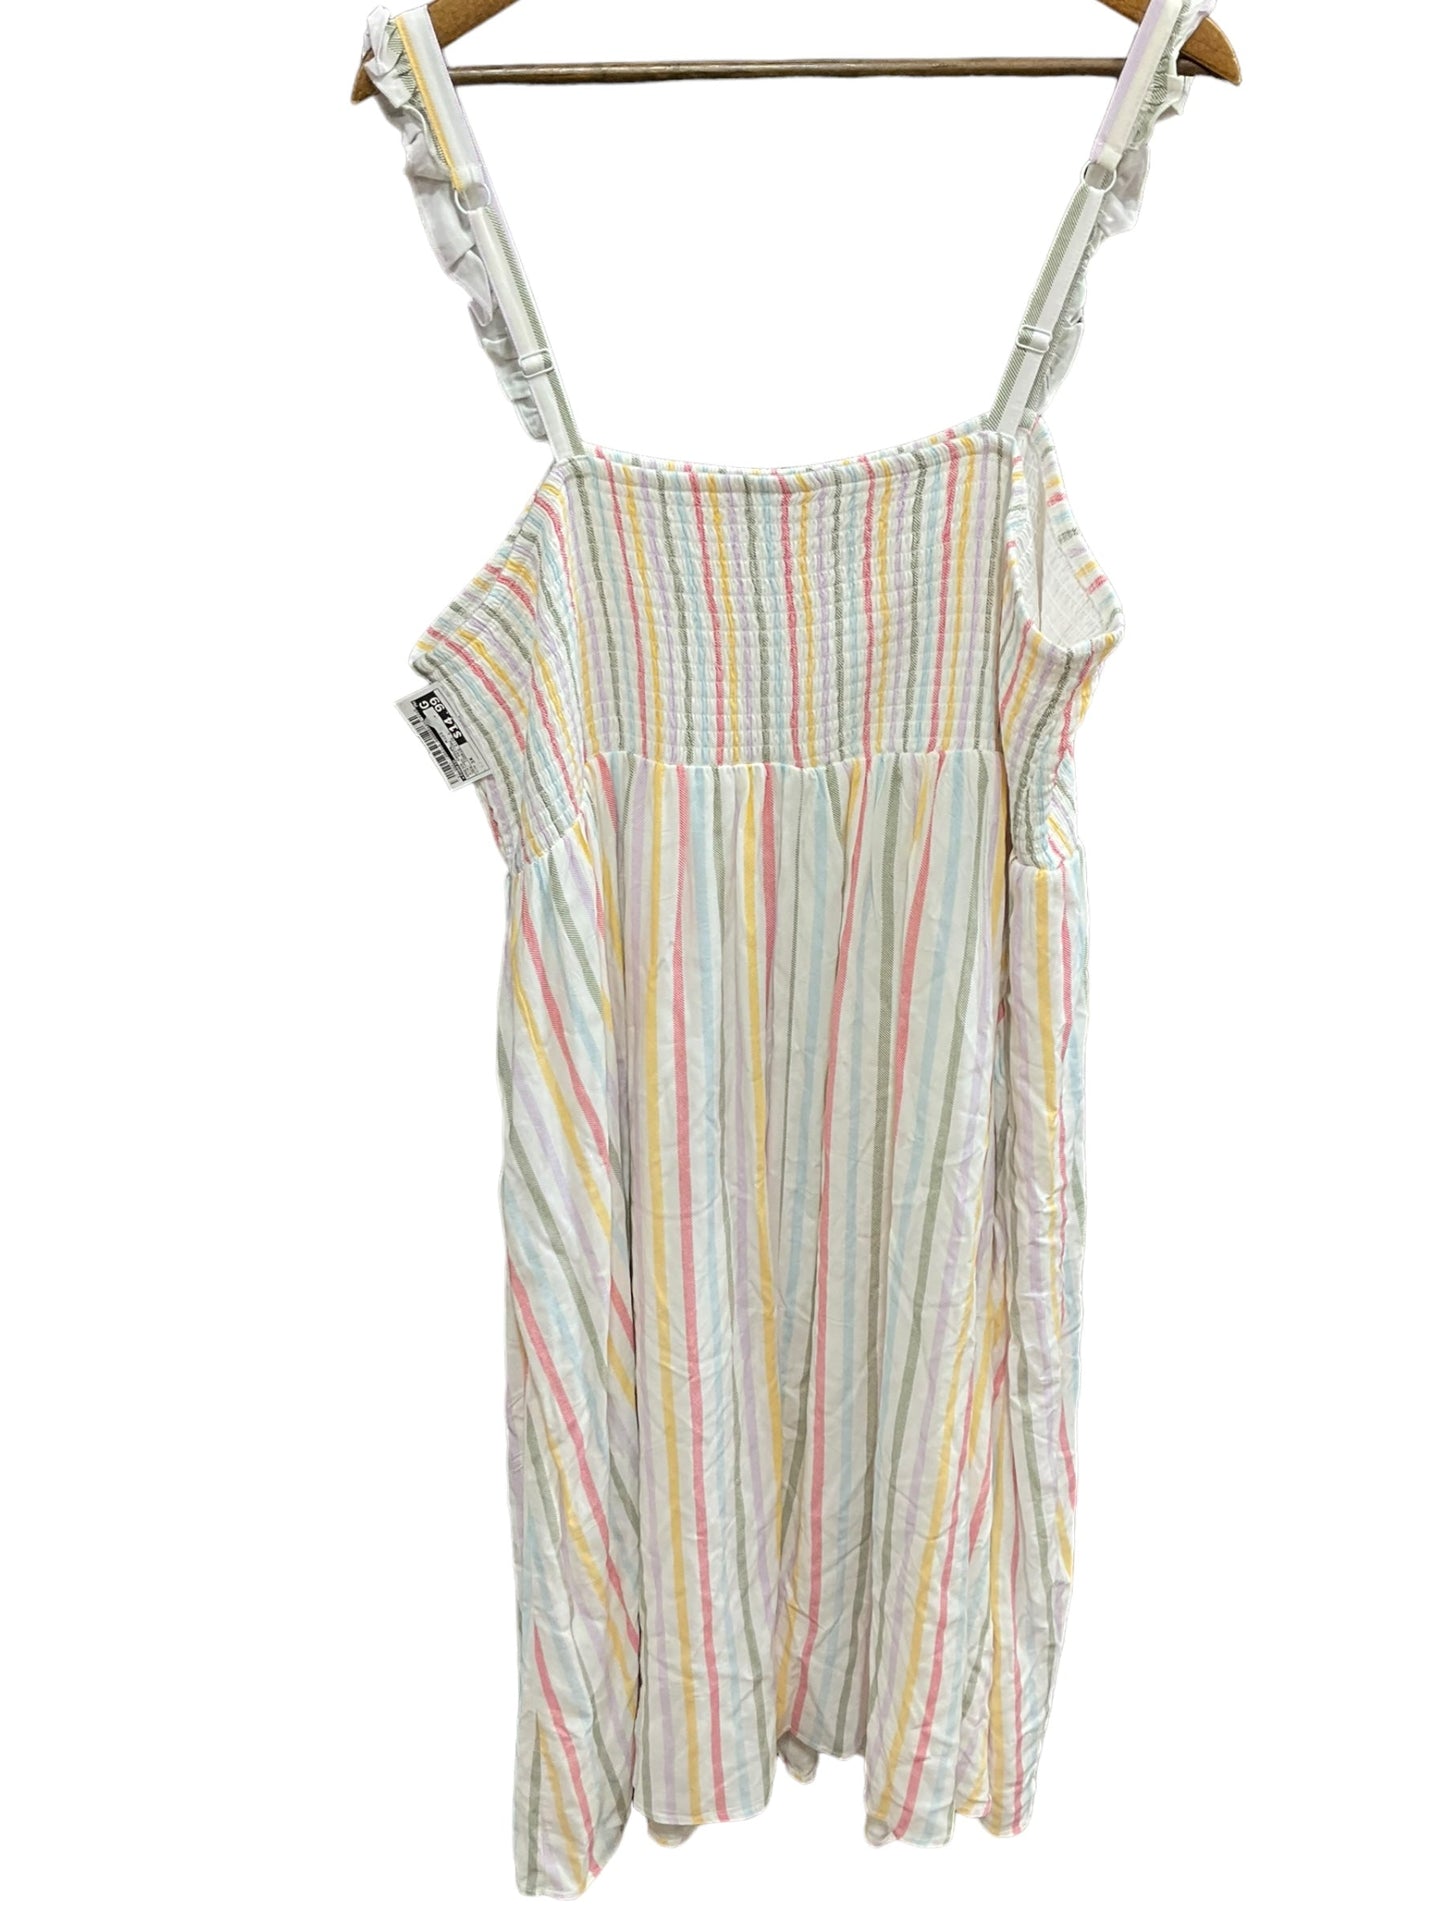 Striped Pattern Dress Casual Midi Torrid, Size 3x